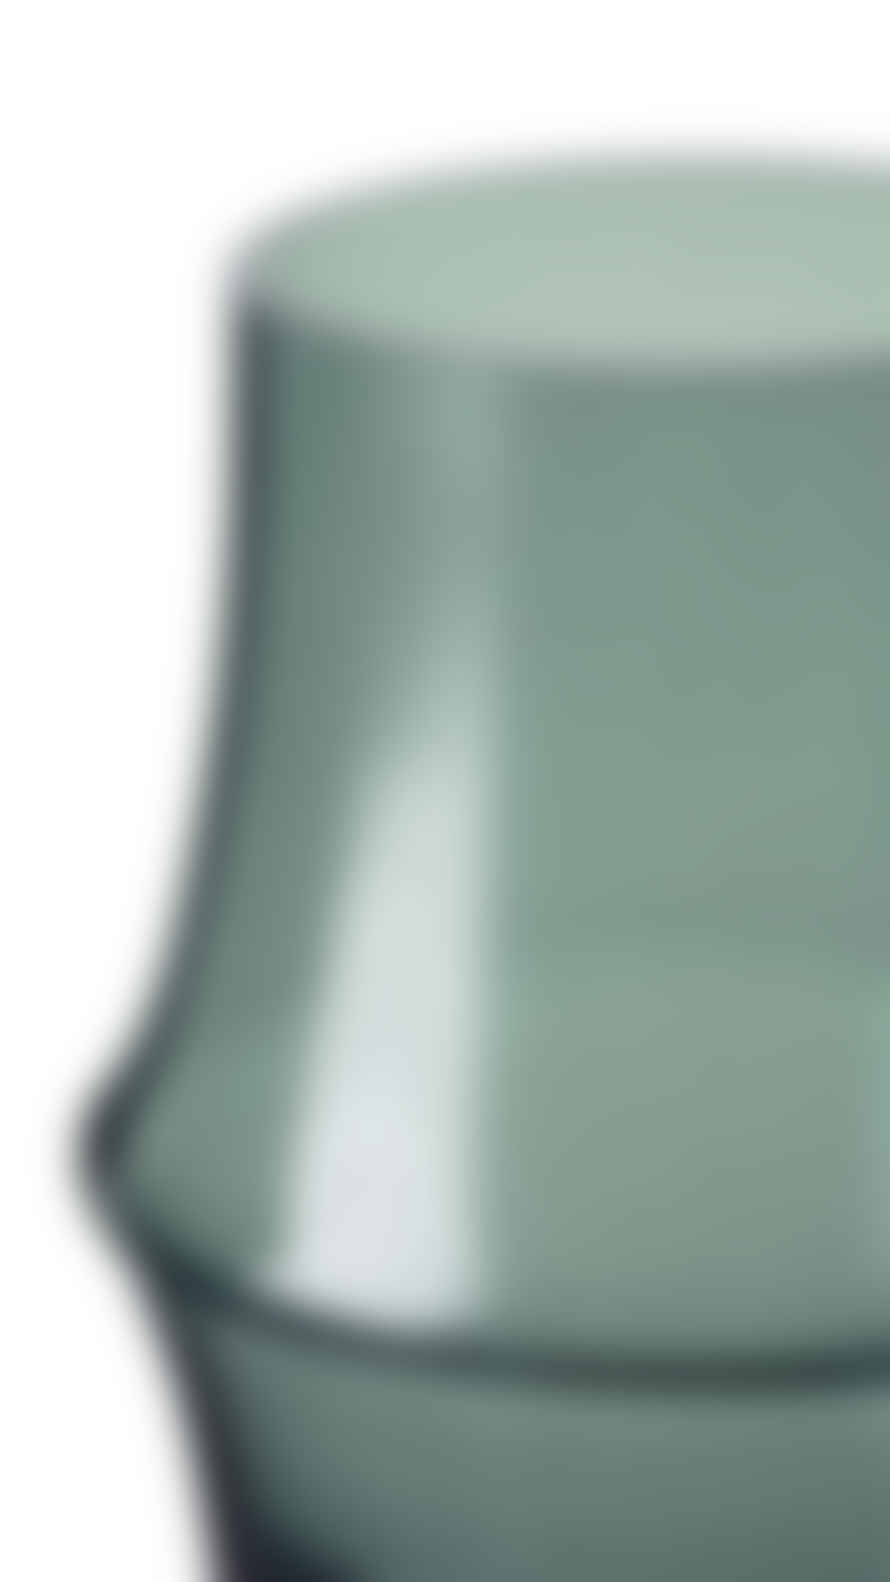 Holmegaard Arc Glass Vase Green